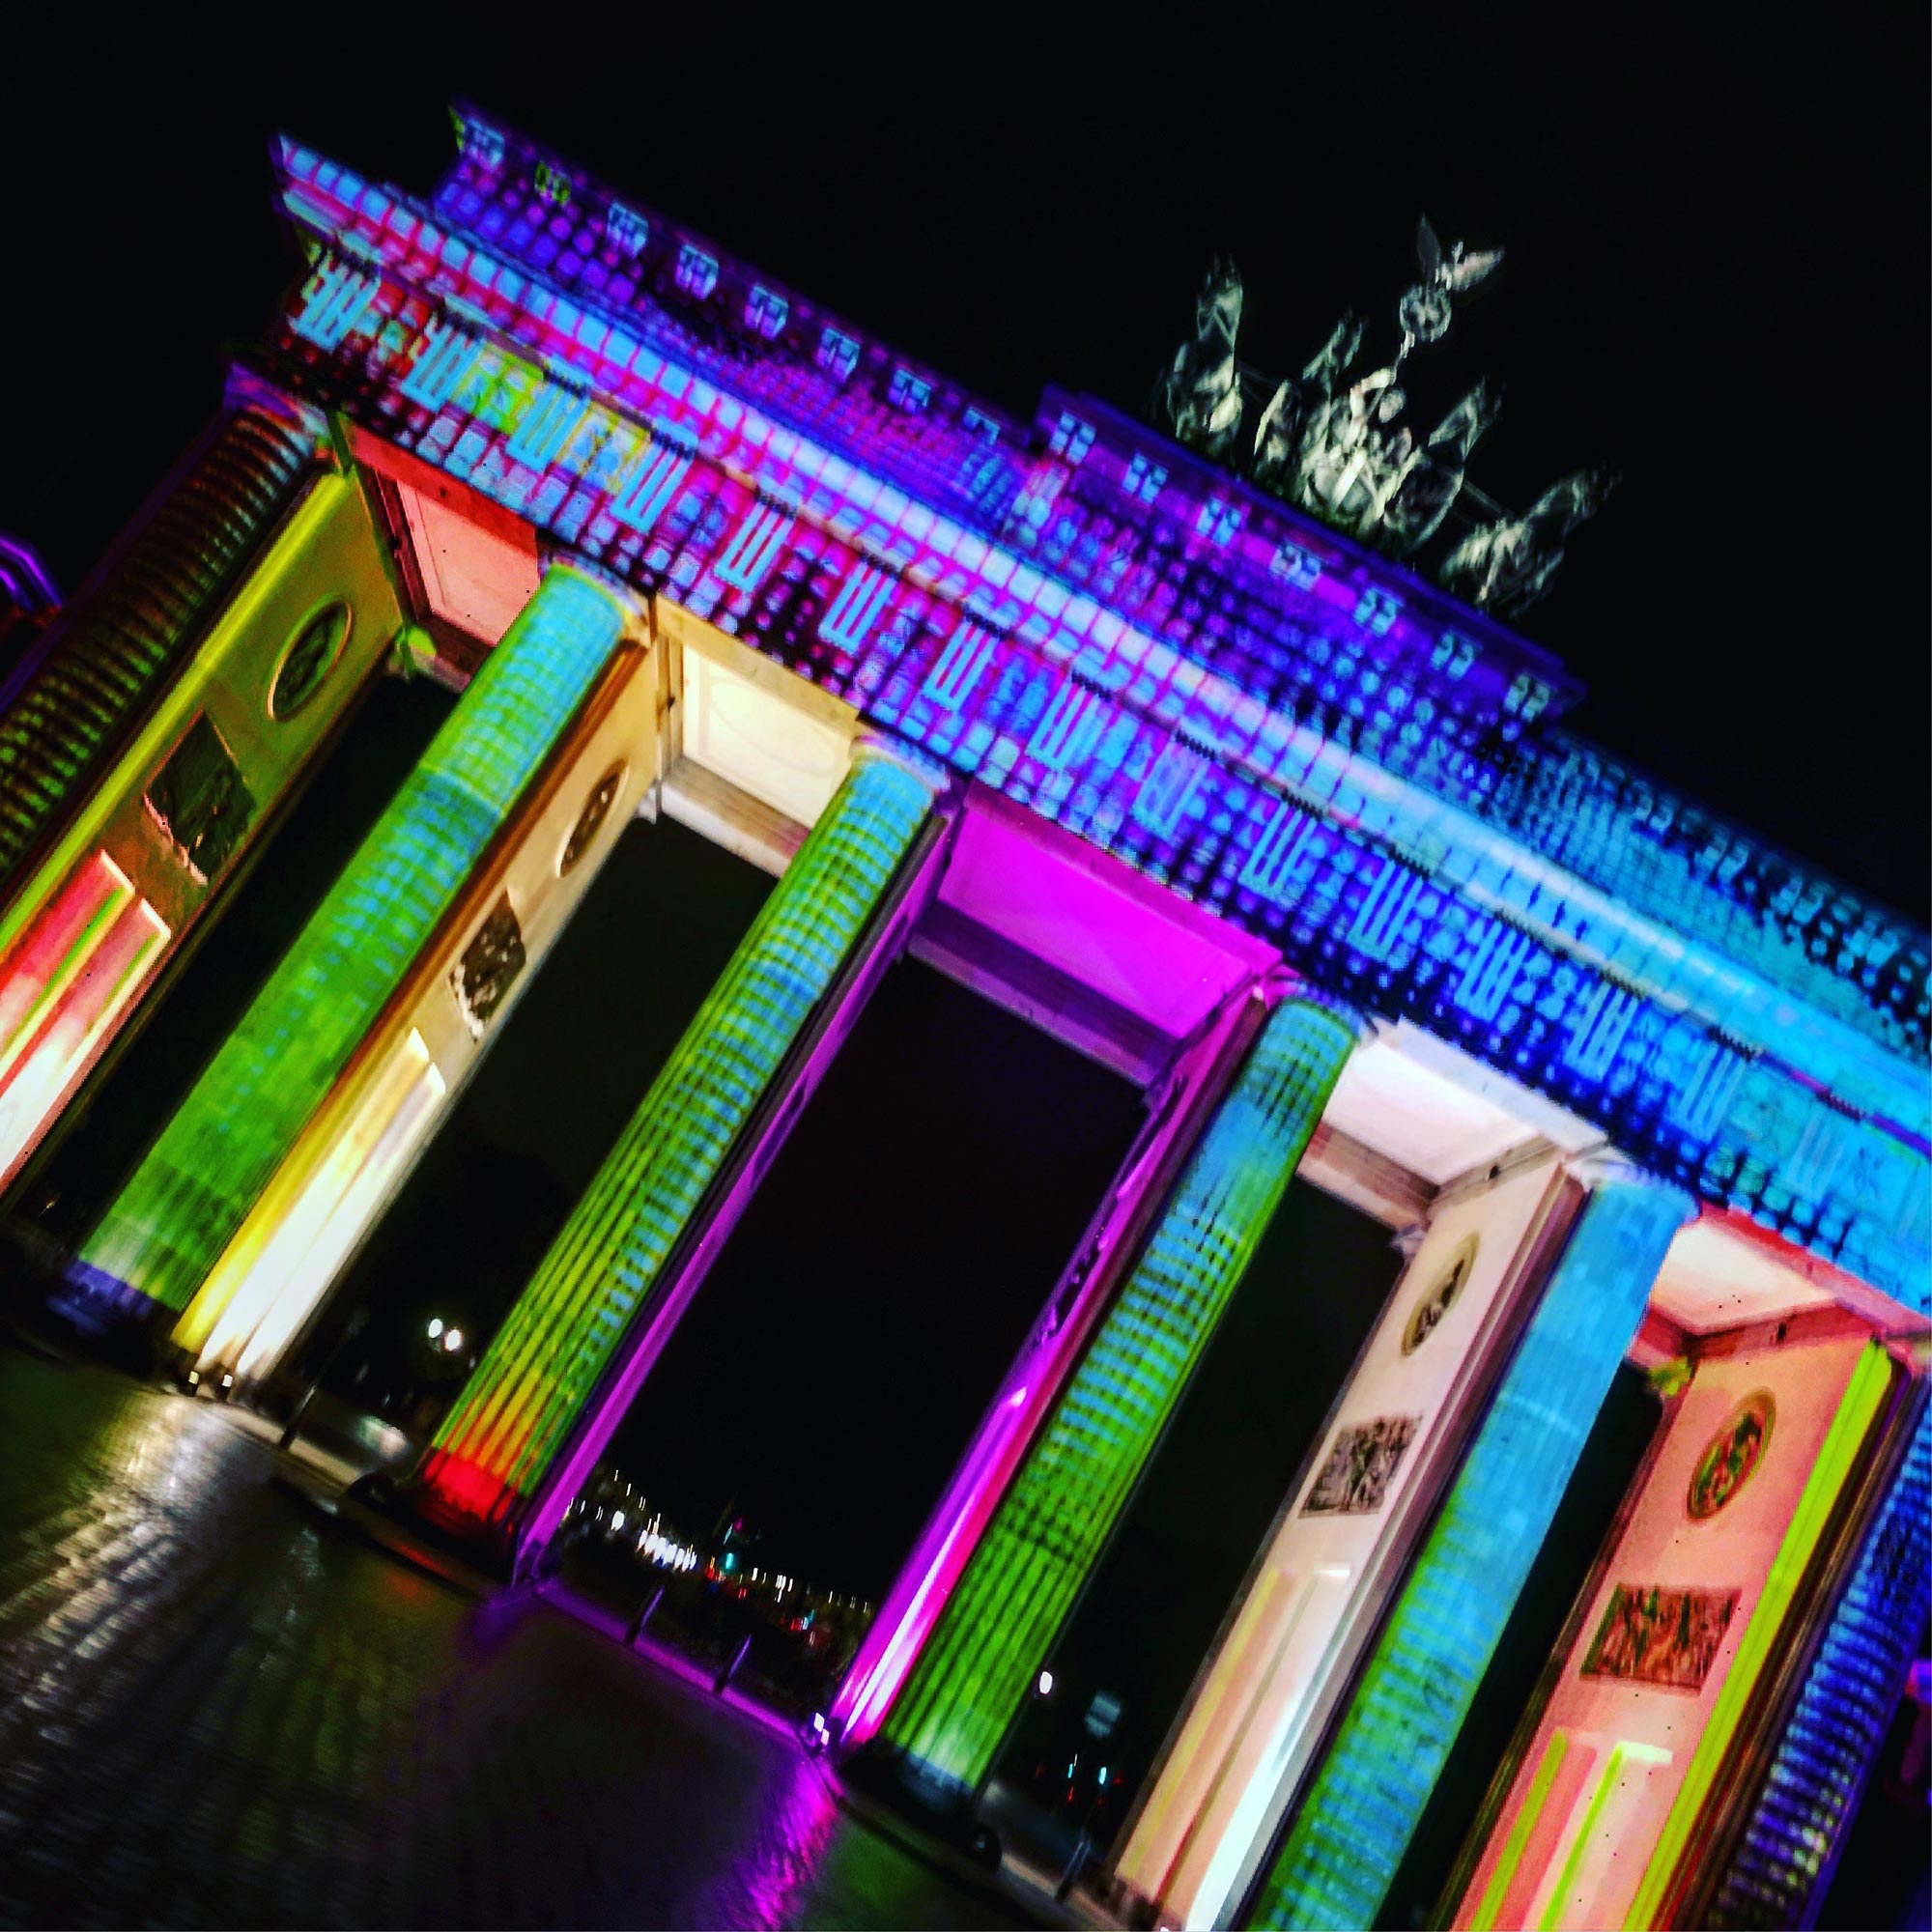 Festival of Lights Brandenburger Tor C